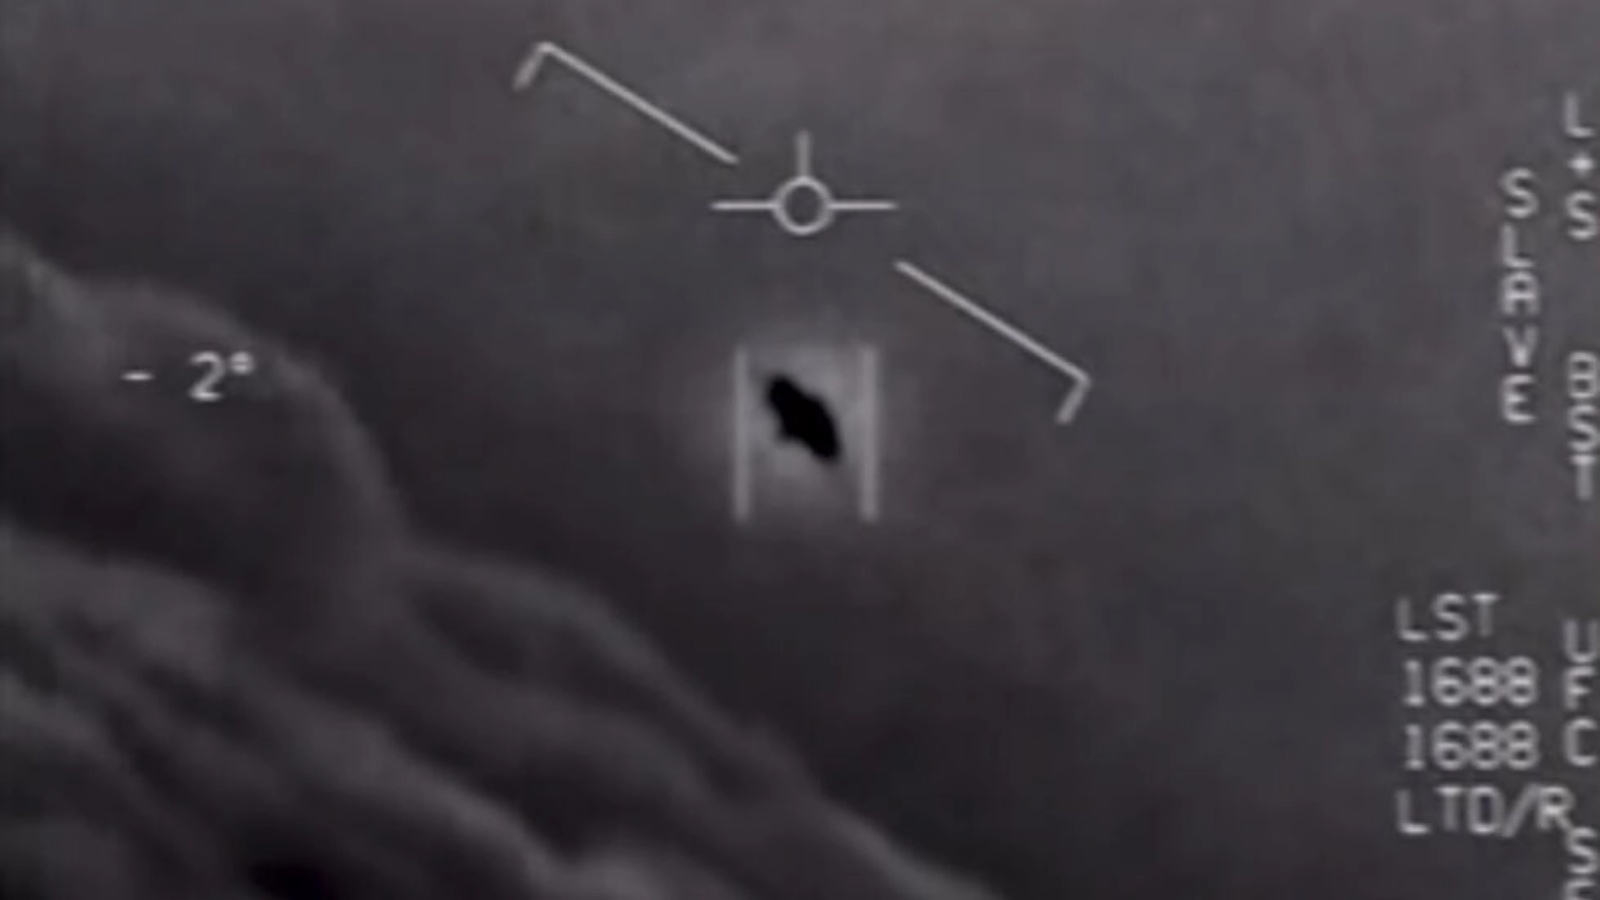 صورة ملتقطة عن الشاشة في 28 أبريل 2020 وزعتها وزارة الدفاع الأميركية لشريط فيديو يظهر جسماً طائراً غامضاً